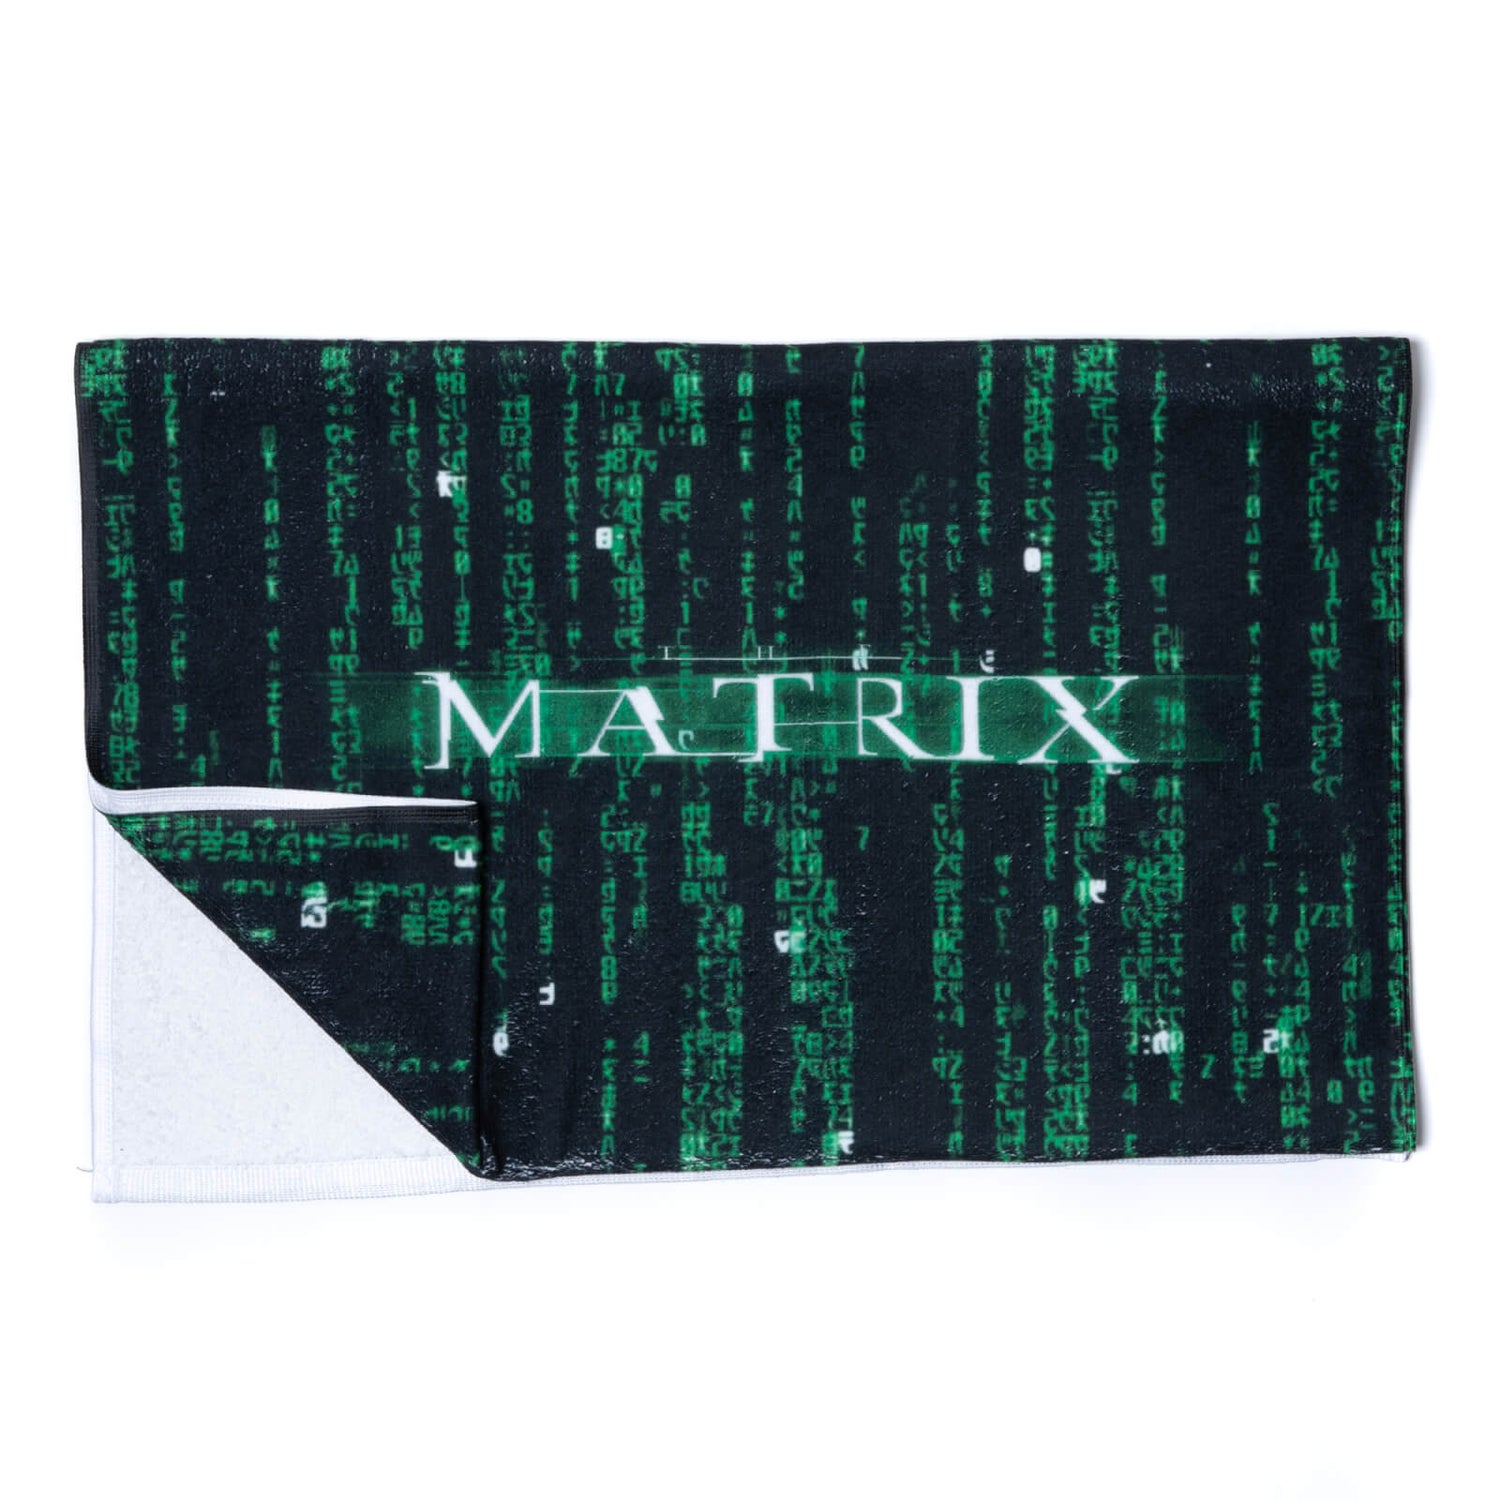 The Matrix Handdoek